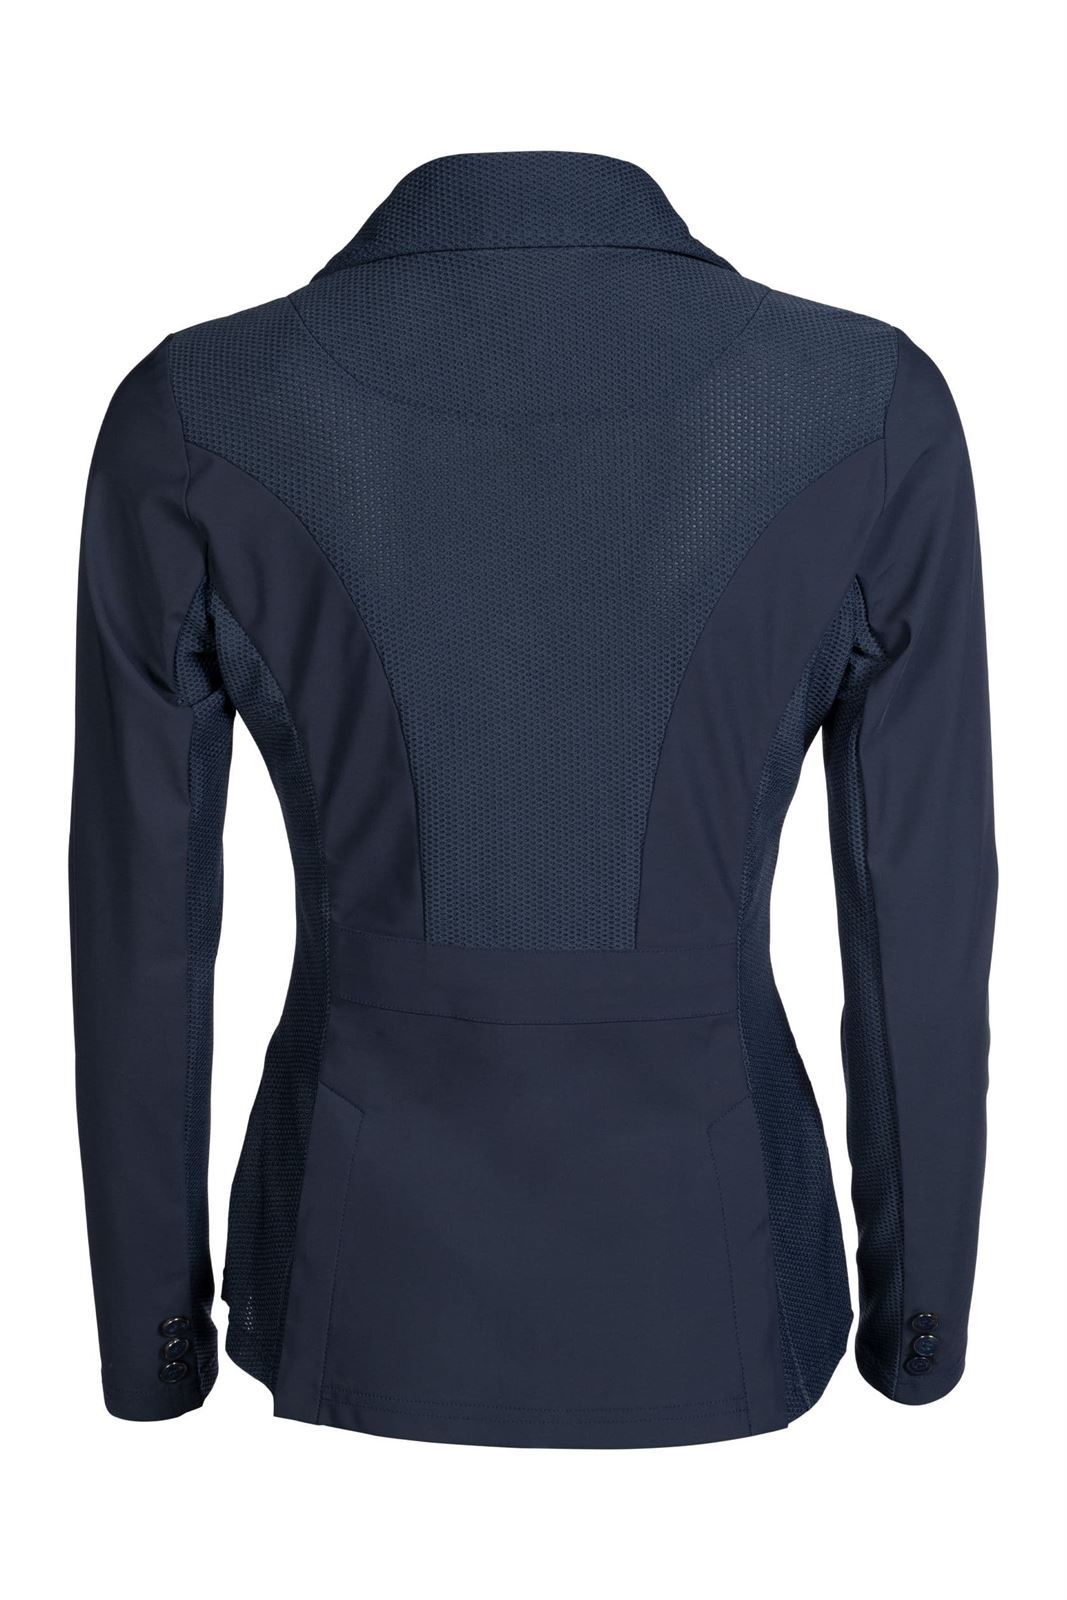 Chaqueta concurso mujer HKM Sports Equipment Hunter Slim Fit, color azul marino con tejido mesh - Imagen 3